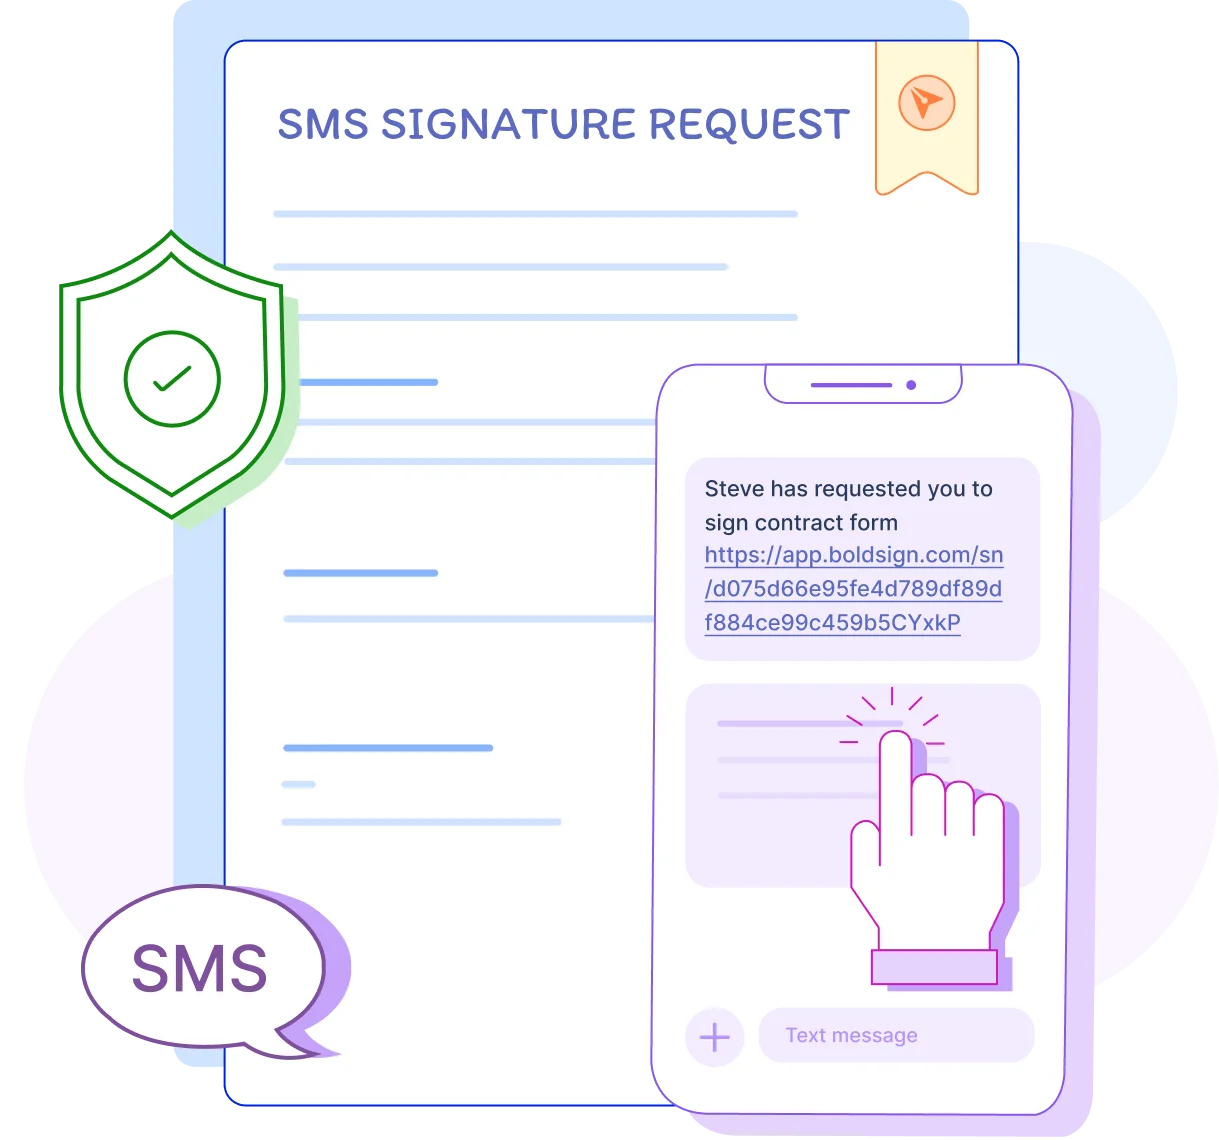 SMS signature request